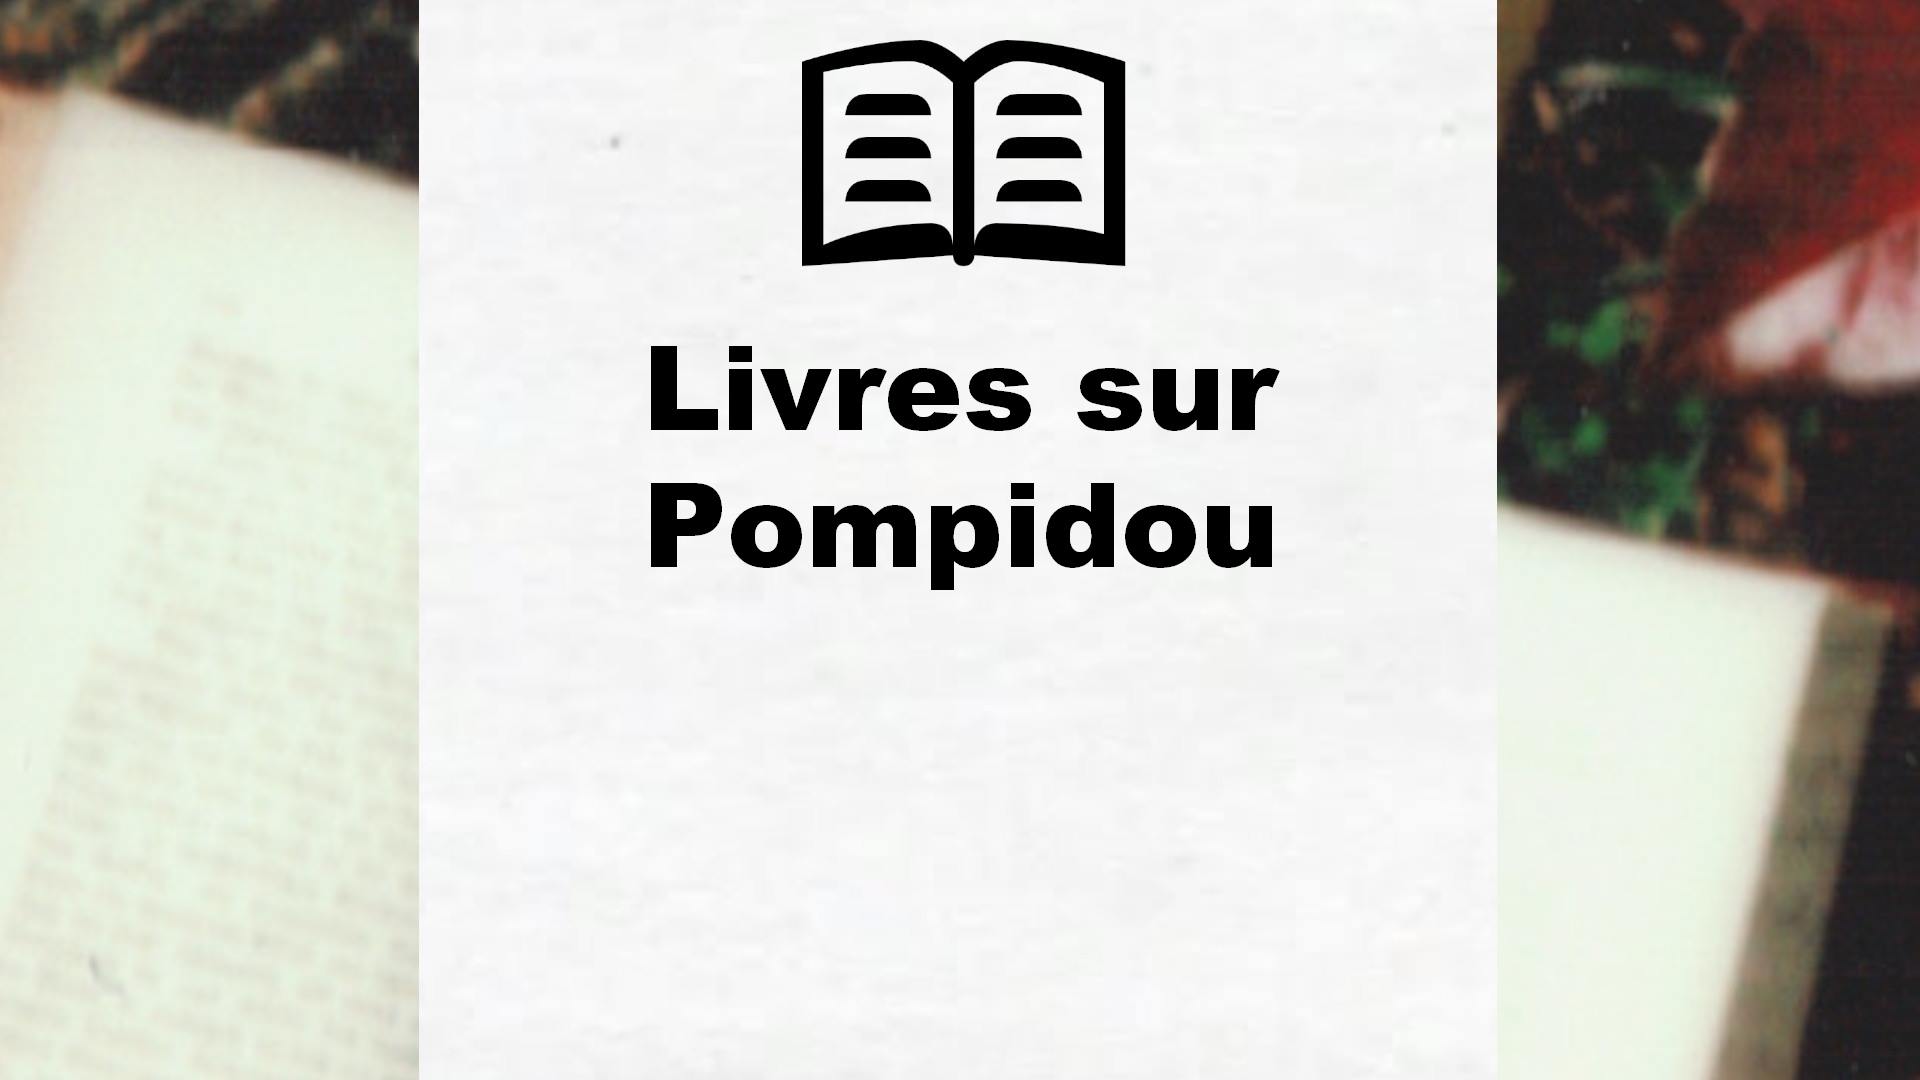 Livres sur Pompidou